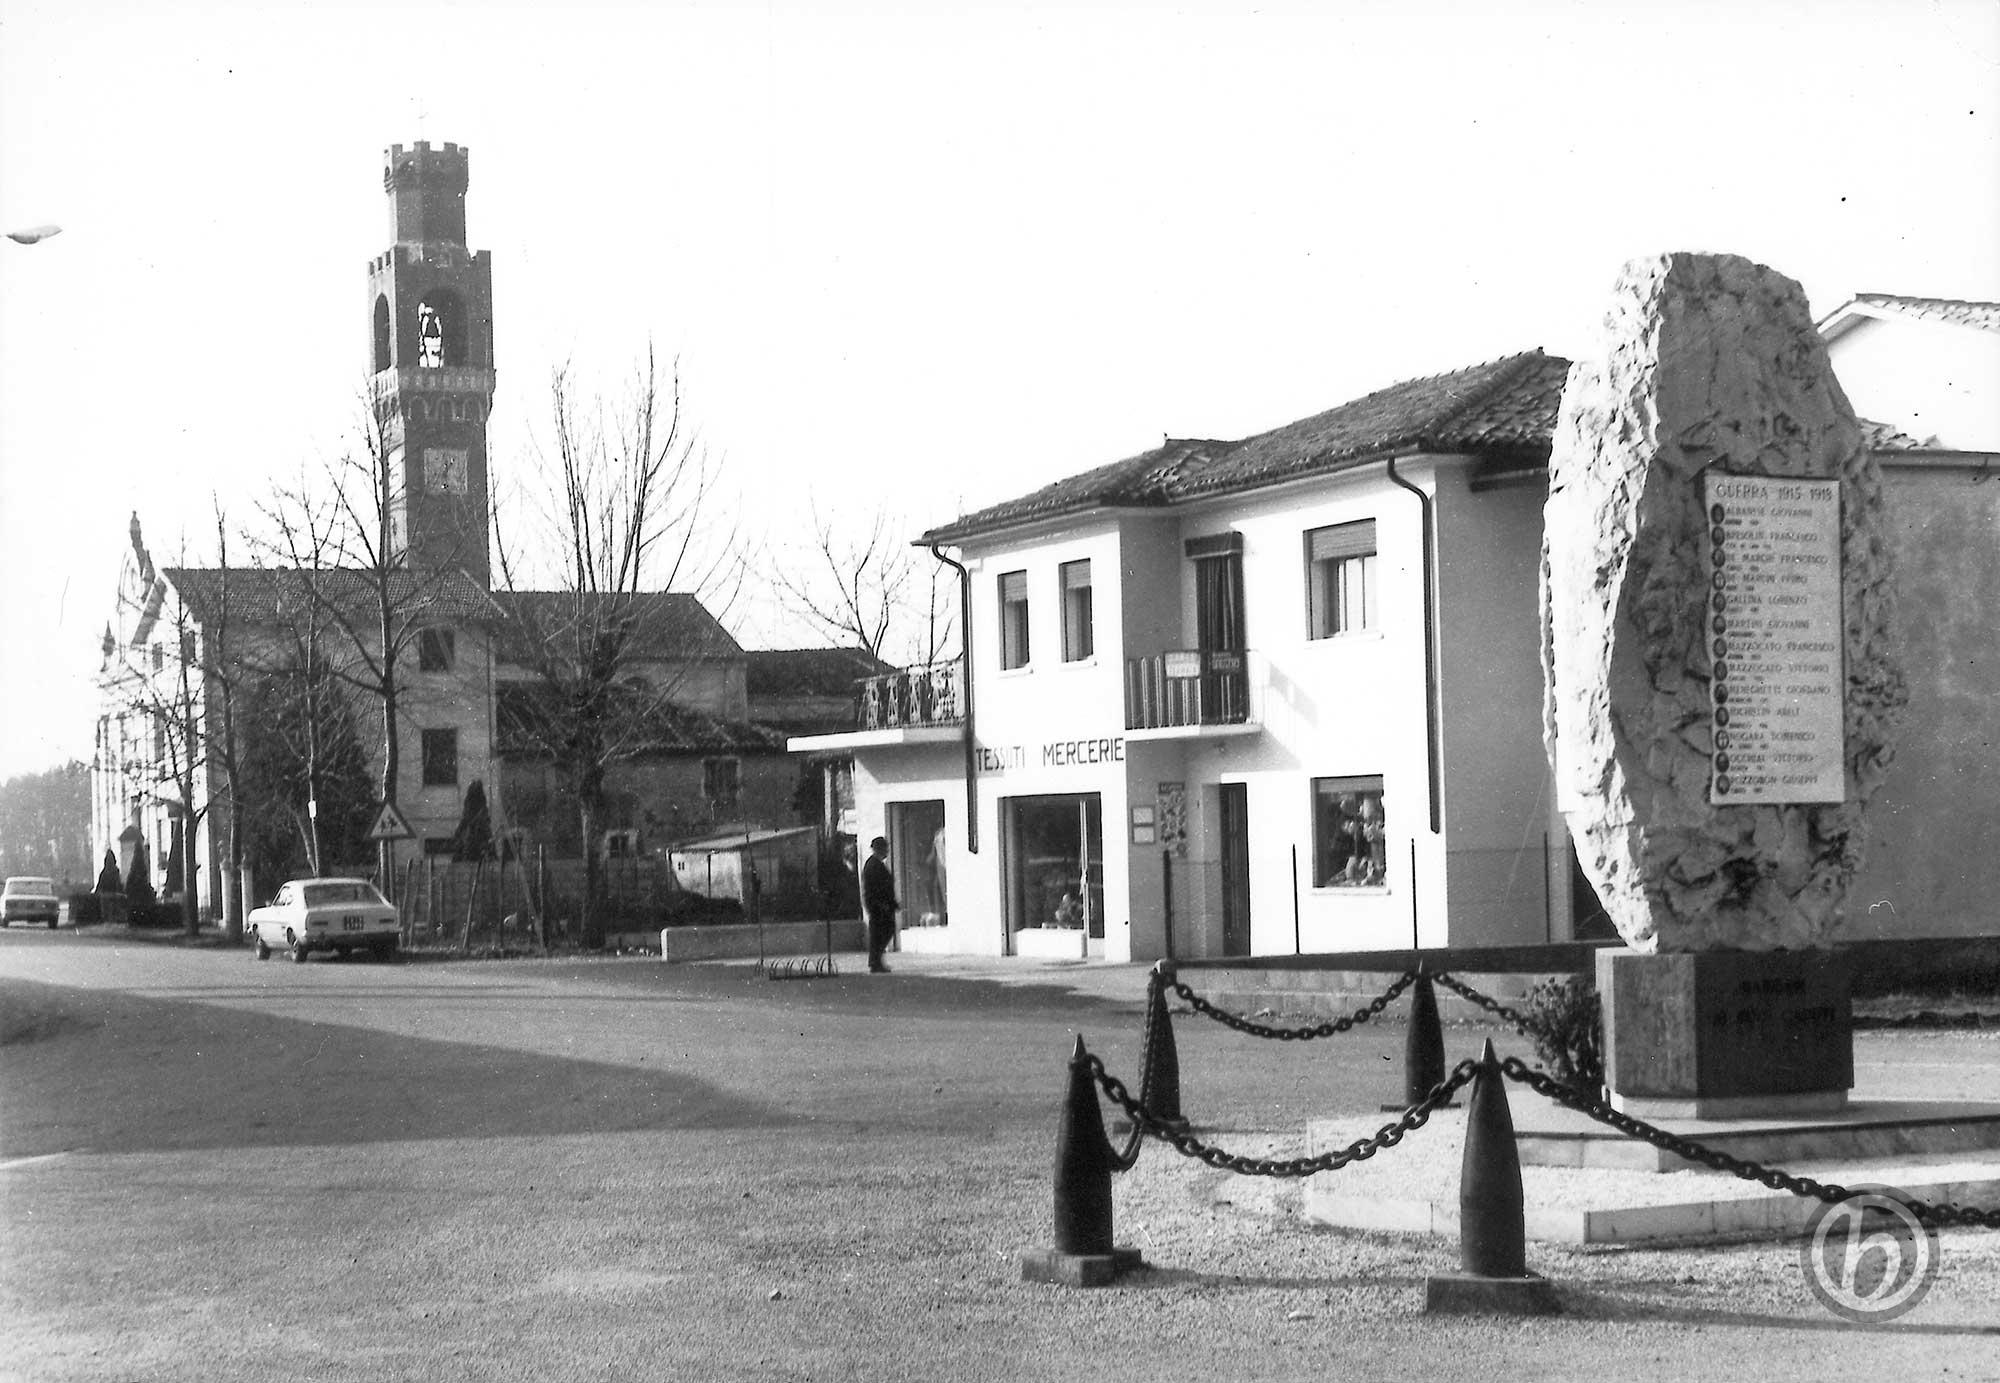 Foto Marino Binotto - Via Stazione: in primo piano il Monumento ai Caduti